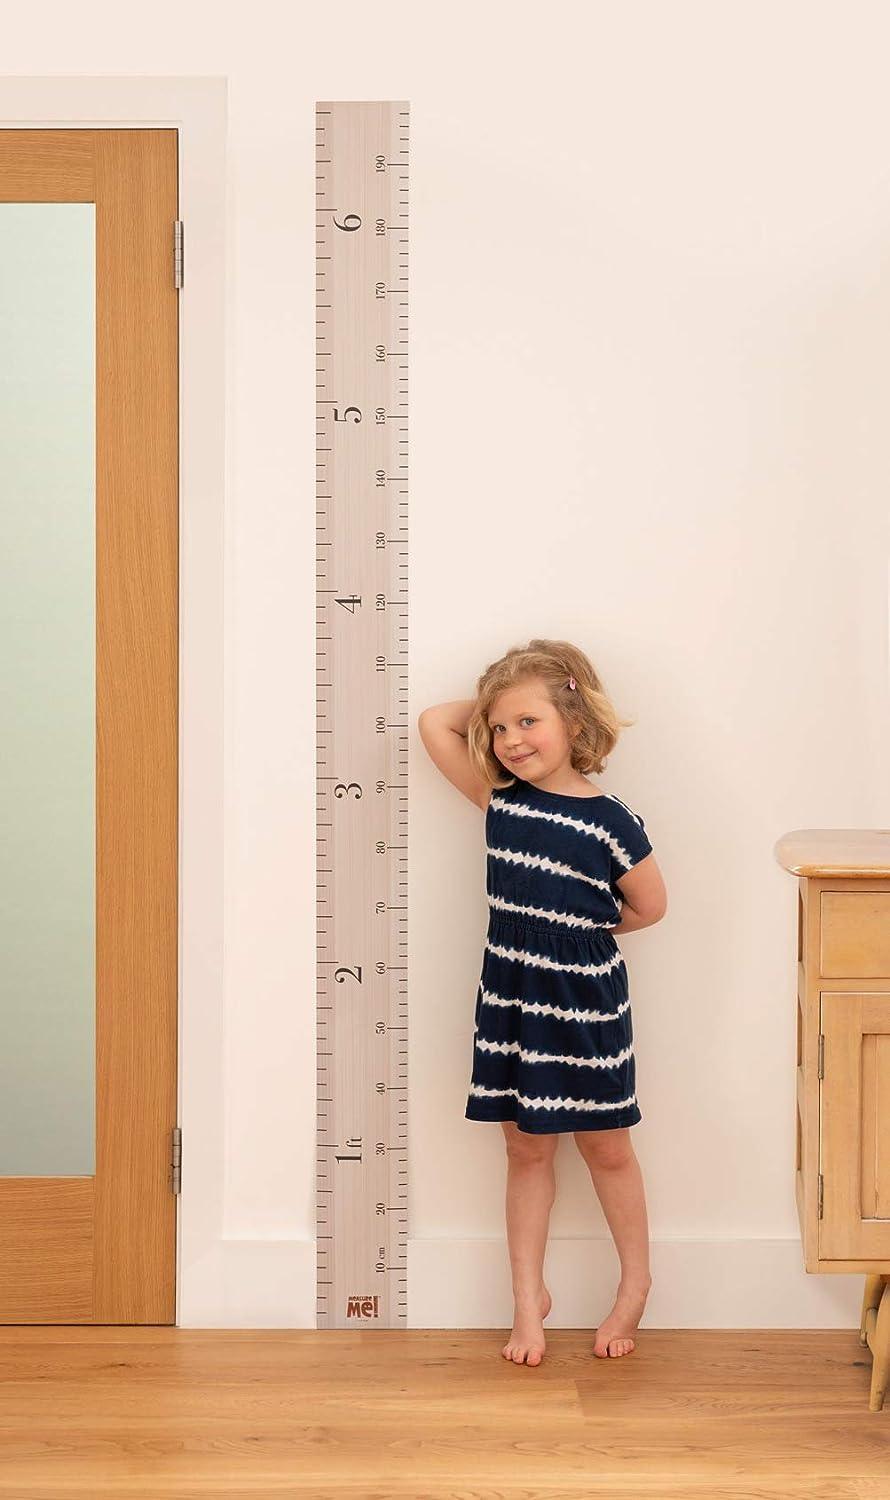 Measure Me! Tabla de altura de crecimiento enrollable para niños y niños - VIRTUAL MUEBLES